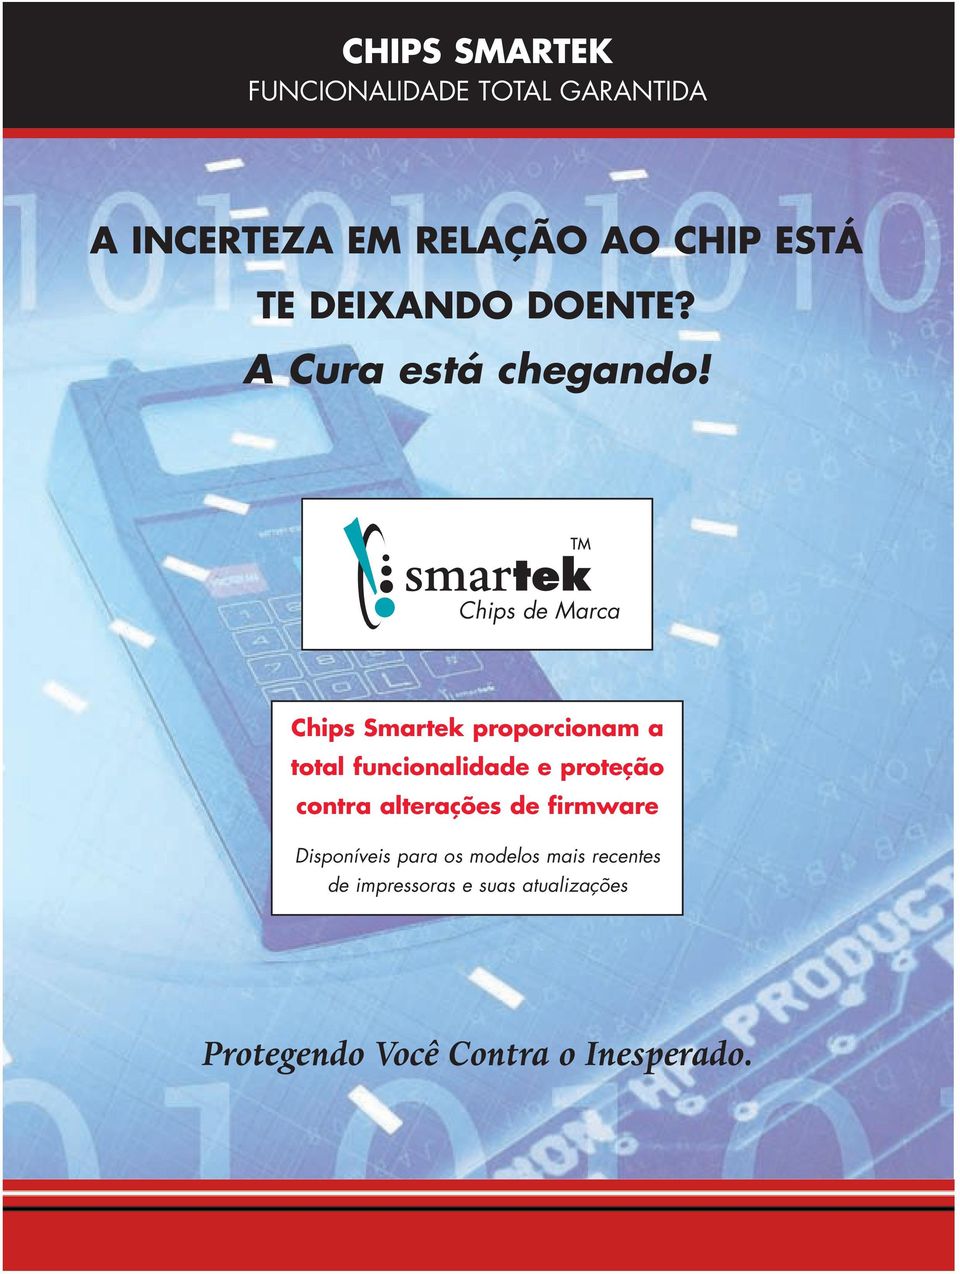 Chips de Marca Chips Smartek proporcionam a total funcionalidade e proteção contra